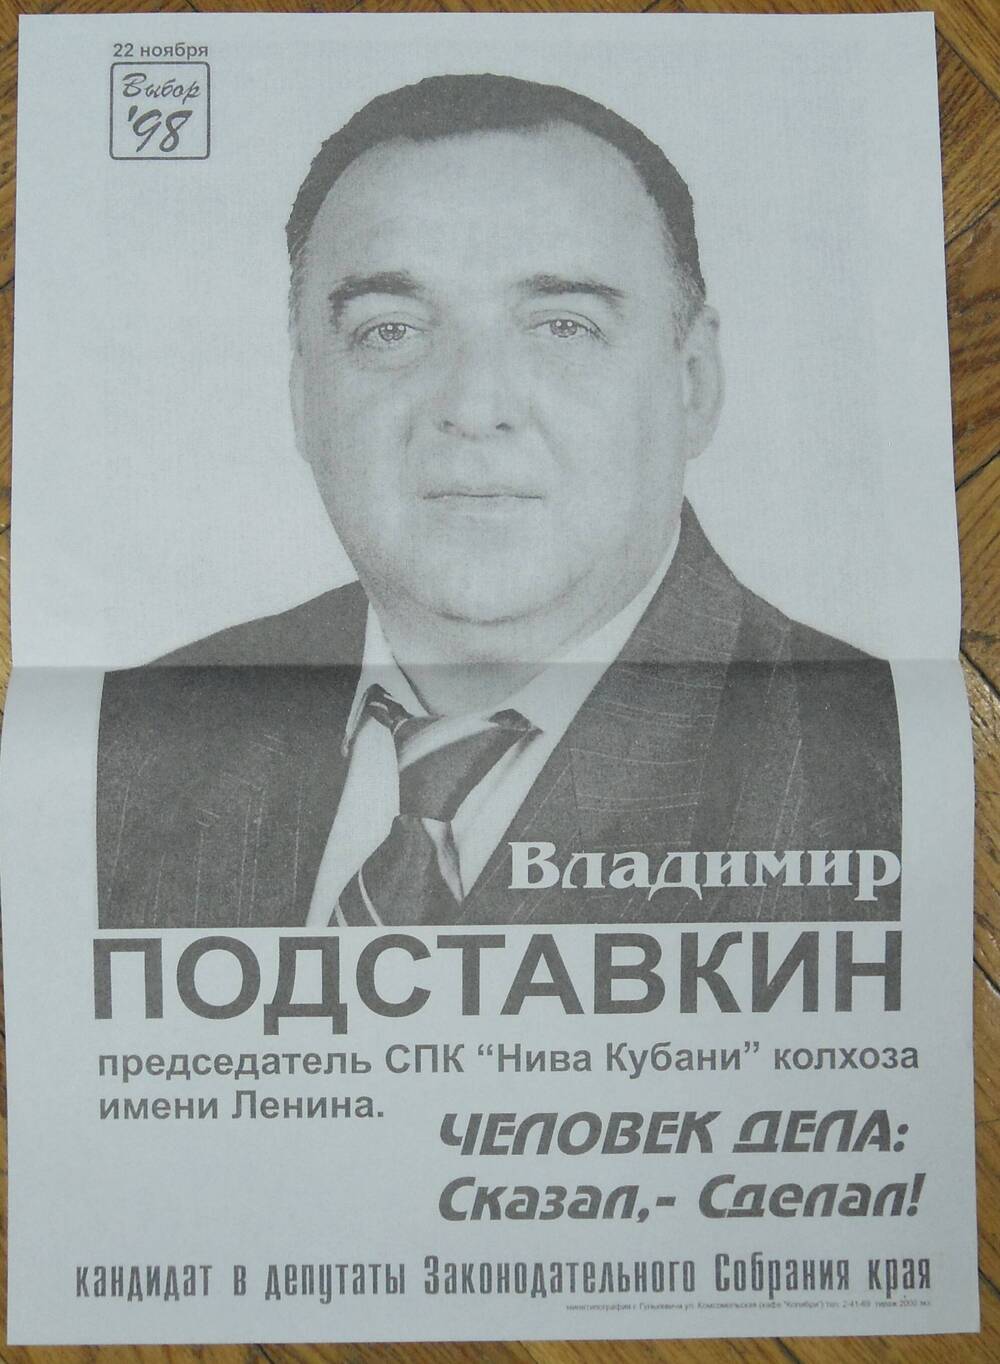 Предвыборная листовка кандидата в депутаты ЗСК Подставкина В., с портретом